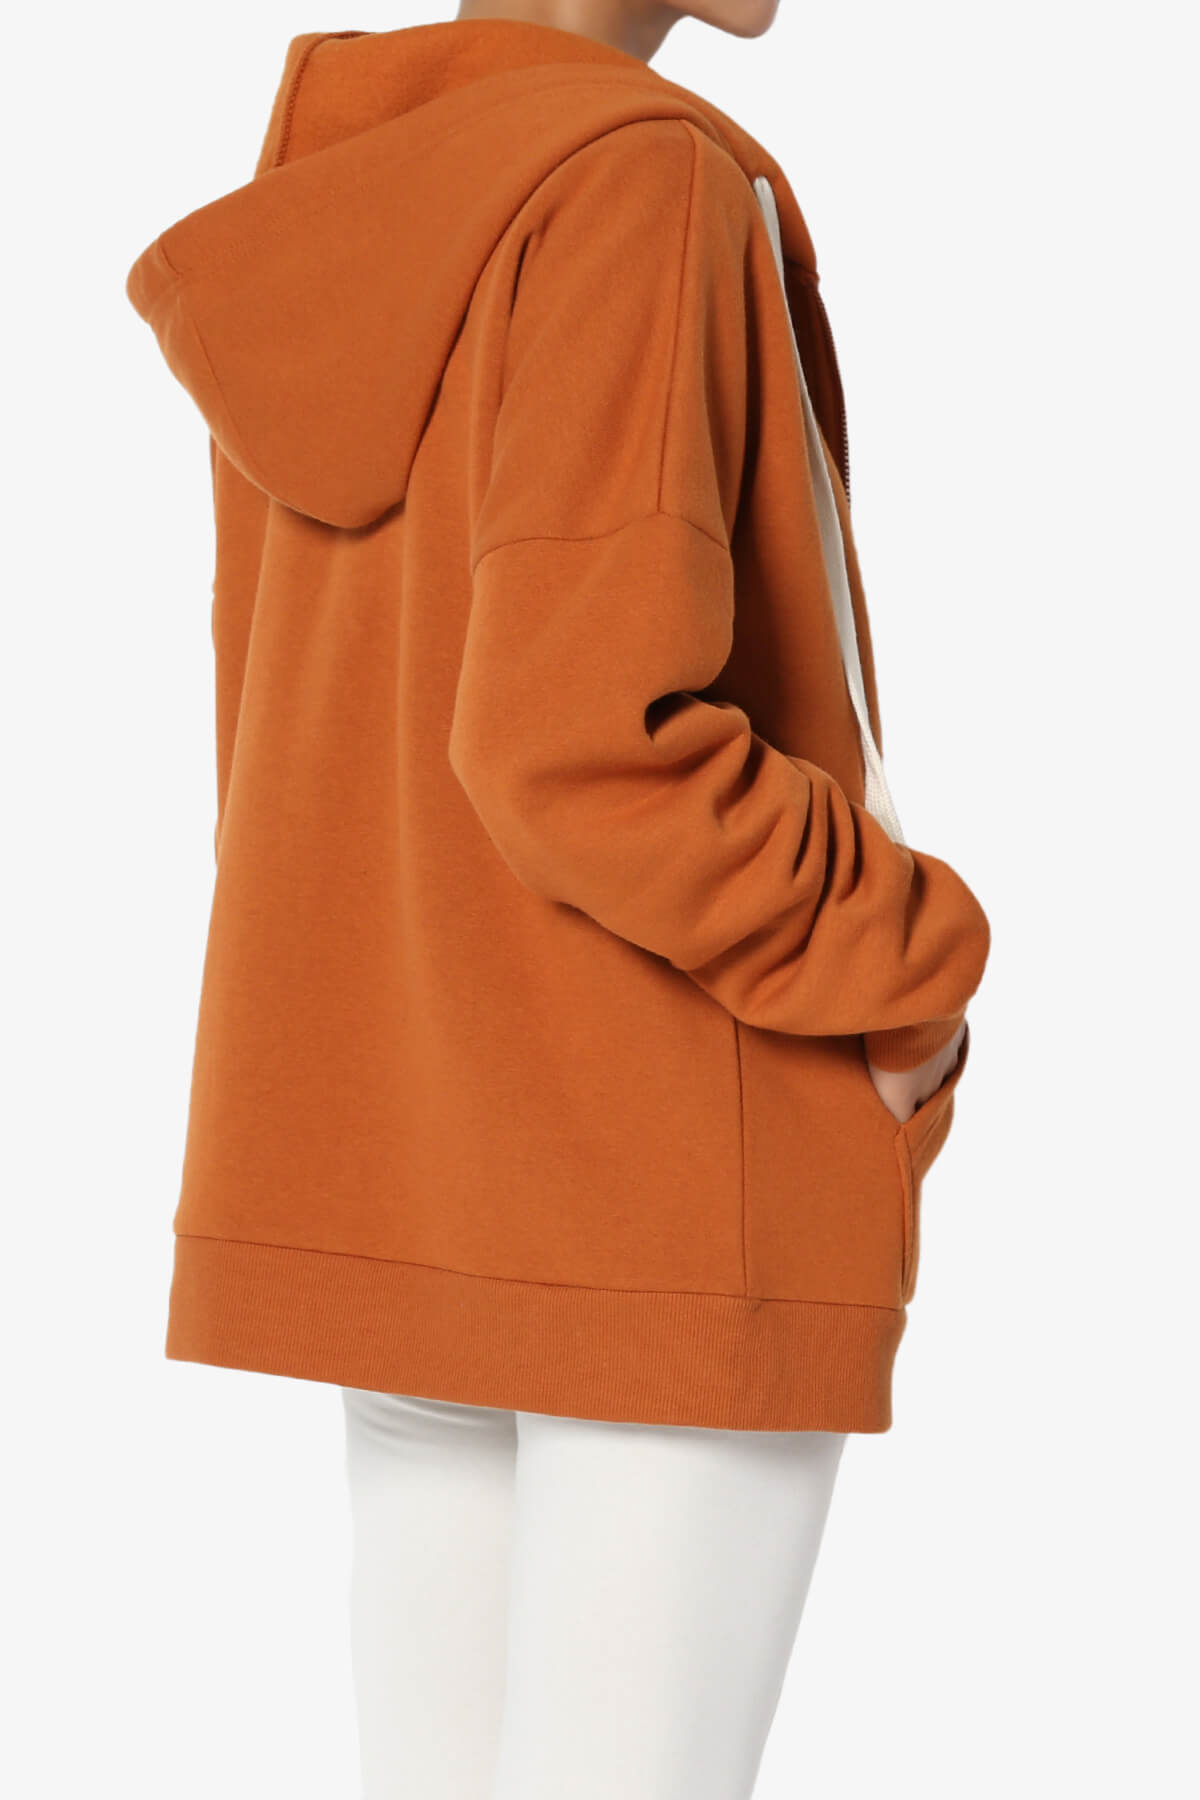 TheMogan Women's Essential Full Zip Cotton Fleece Hoodie Sweatshirt Relaxed Track Jacket